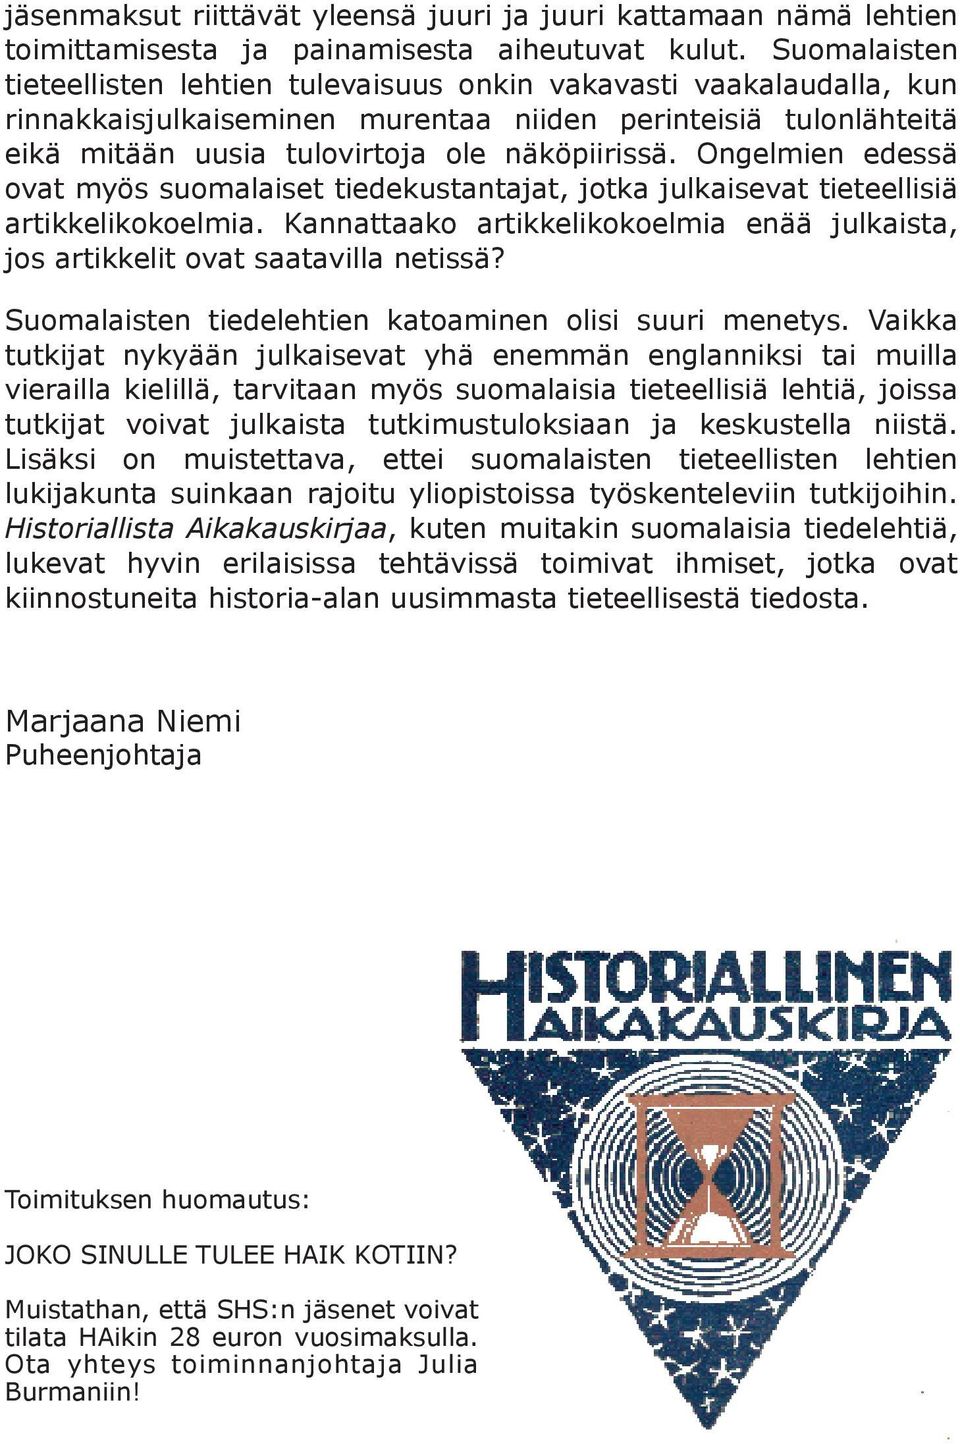 Ongelmien edessä ovat myös suomalaiset tiedekustantajat, jotka julkaisevat tieteellisiä artikkelikokoelmia. Kannattaako artikkelikokoelmia enää julkaista, jos artikkelit ovat saatavilla netissä?